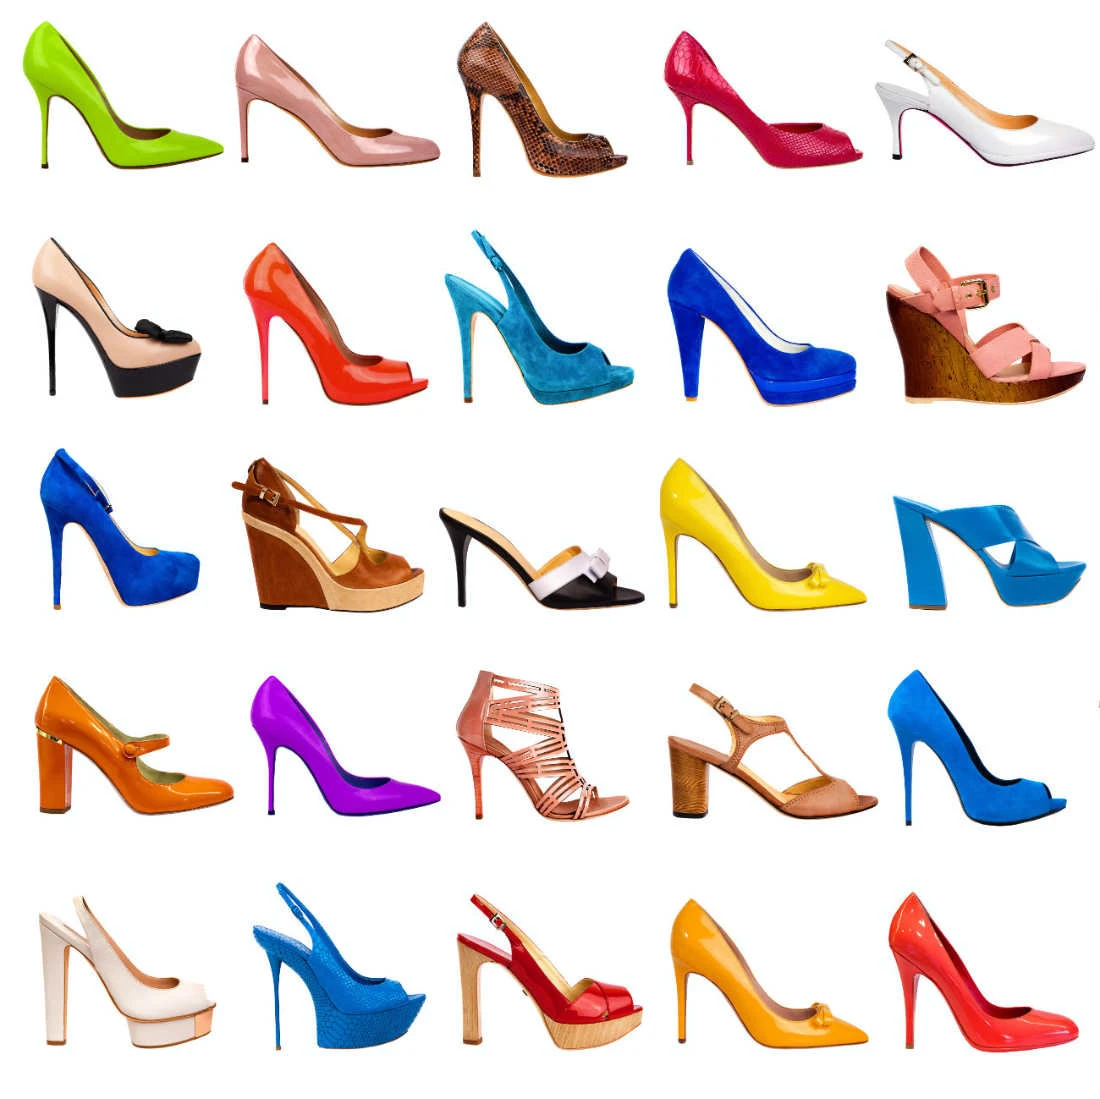 footwear | Heels, Cute shoes heels, Shoes heels classy